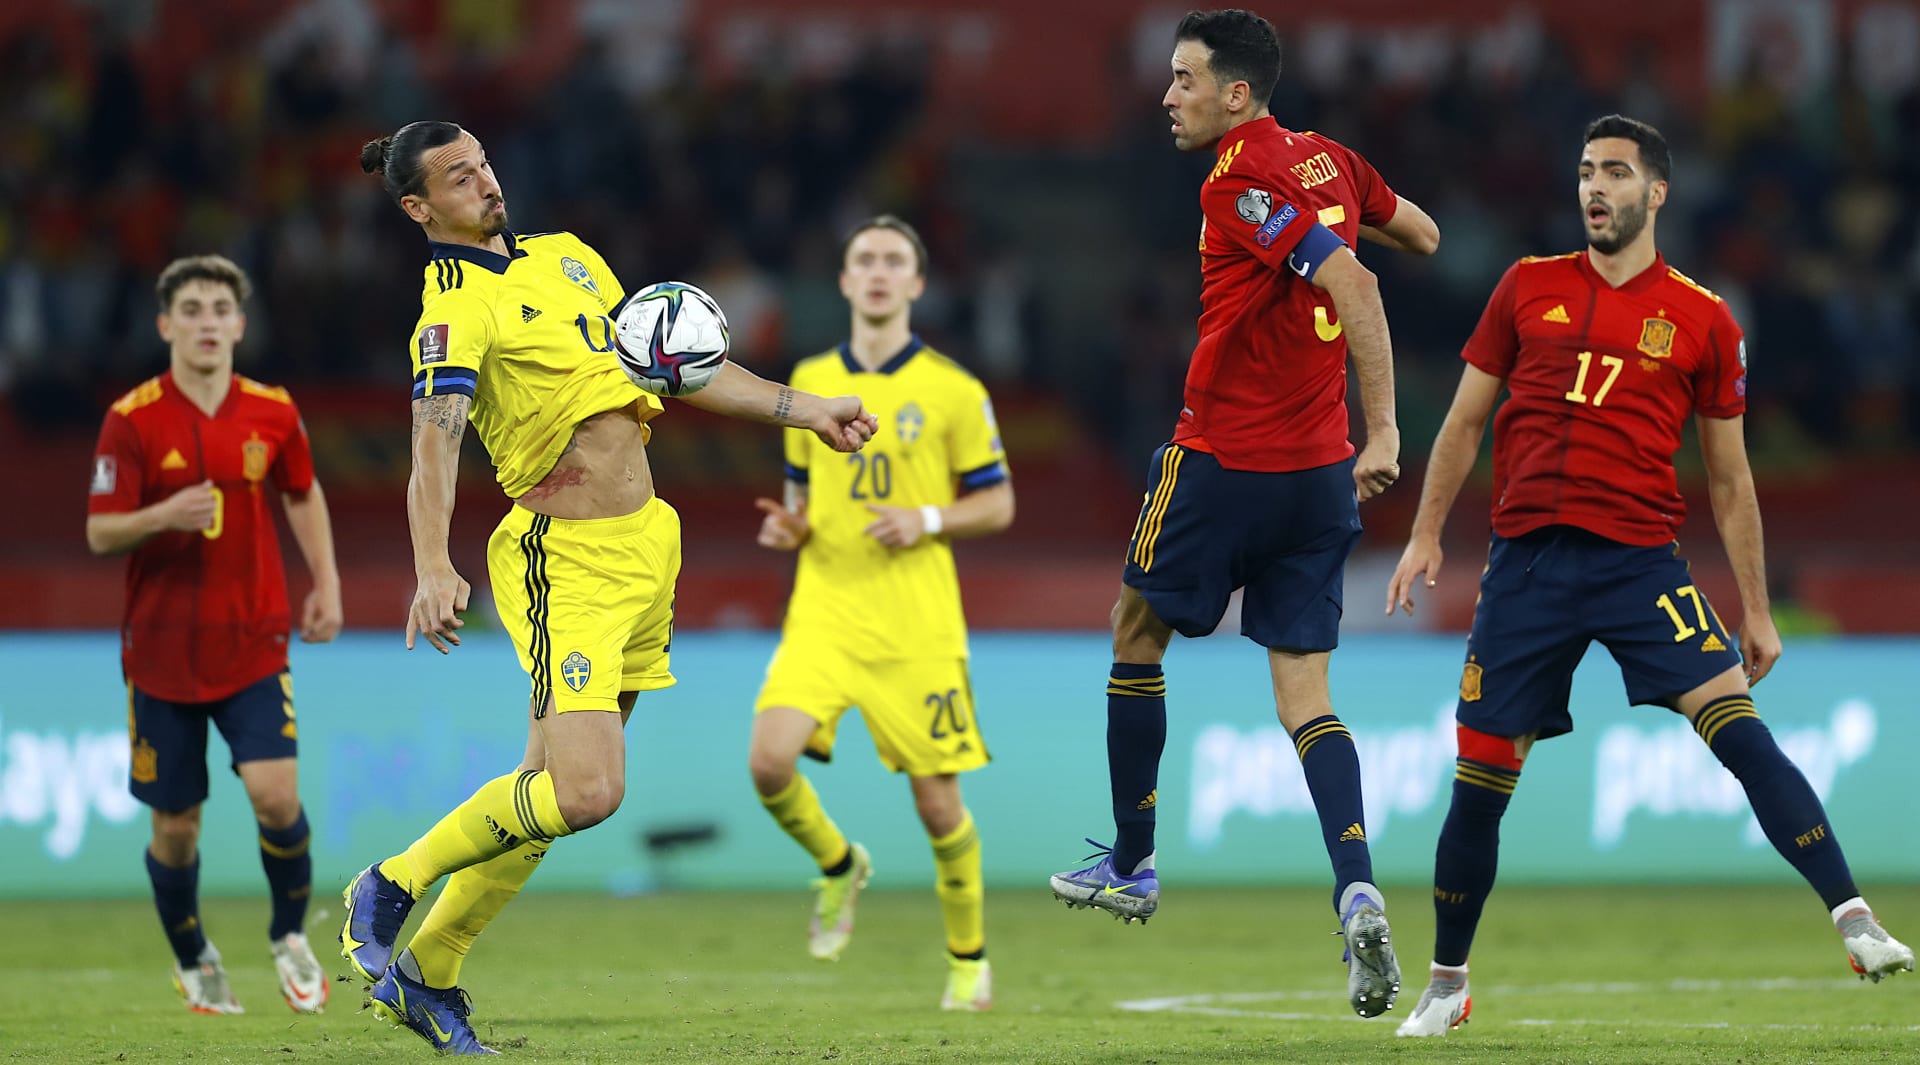 Švédský útočník Zlatan Ibrahimovič zpracovává míč ve svém posledním zápase za reprezentaci v listopadu 2021 v Seville proti Španělsku, které vyhrálo 1:0 a postoupilo přímo na mistrovství světa 2022.